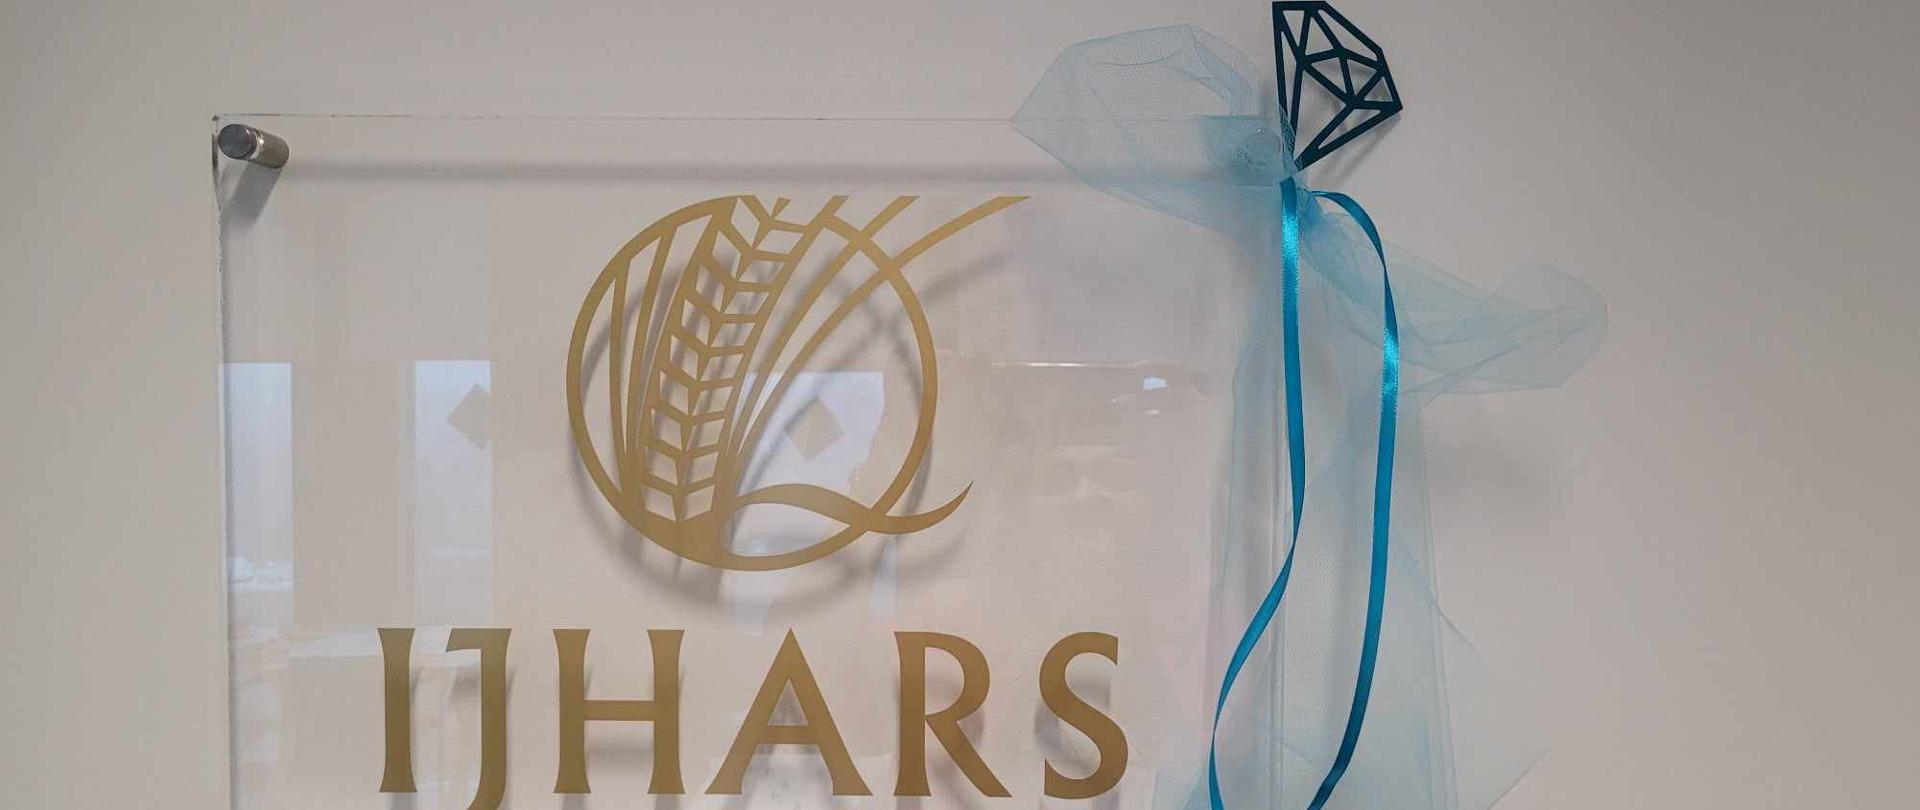 Logo IJHARS z ozdobnym diamentem - symbolem projektu Synergia, w kolorze ewolucyjnego turkusu.